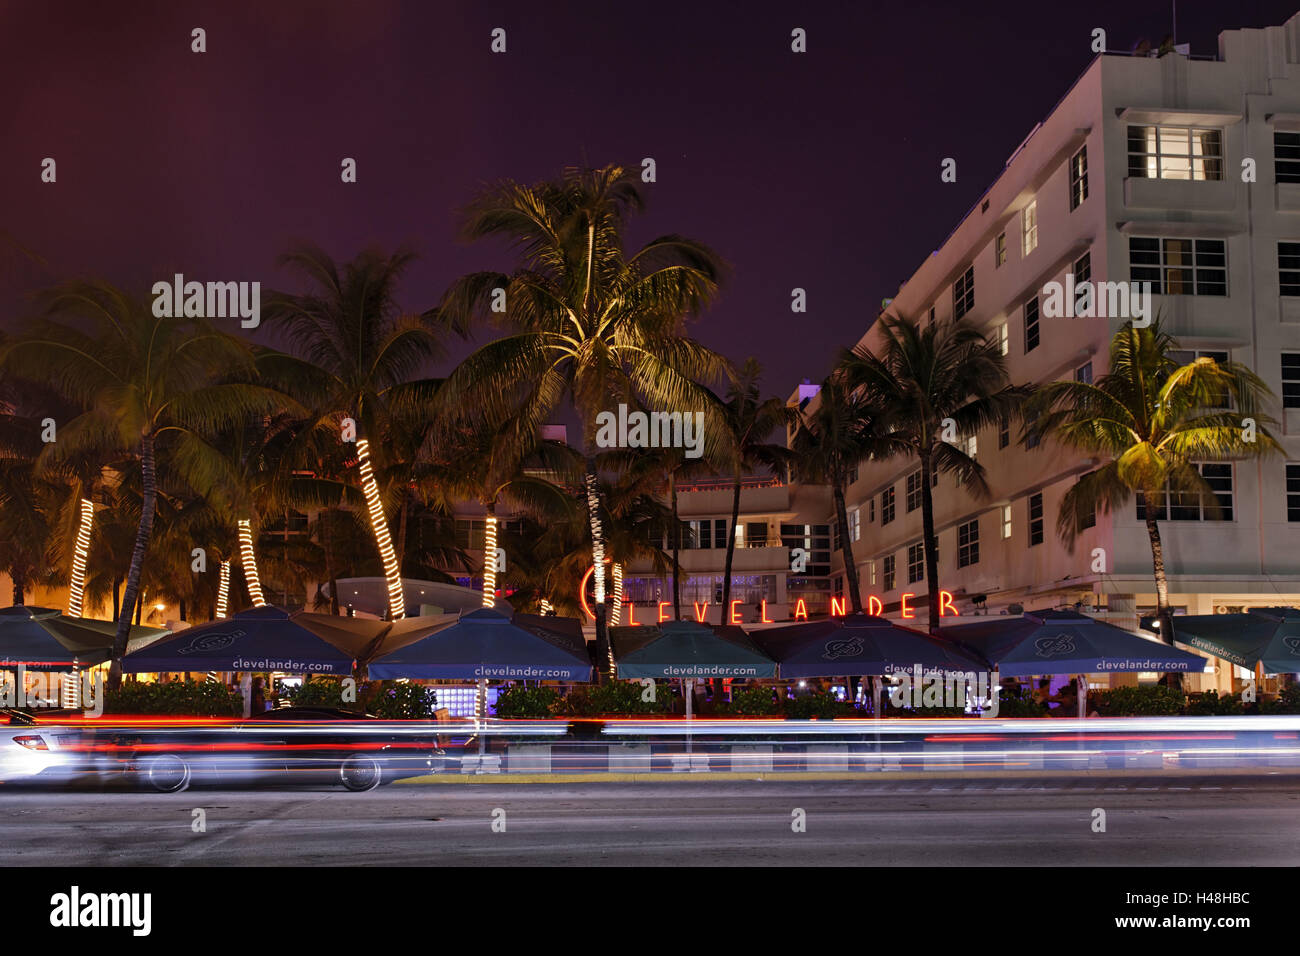 "Clevelander Hotel' en la noche, Ocean Drive de Miami South Beach, el Distrito Art Deco, Florida, Estados Unidos. Foto de stock